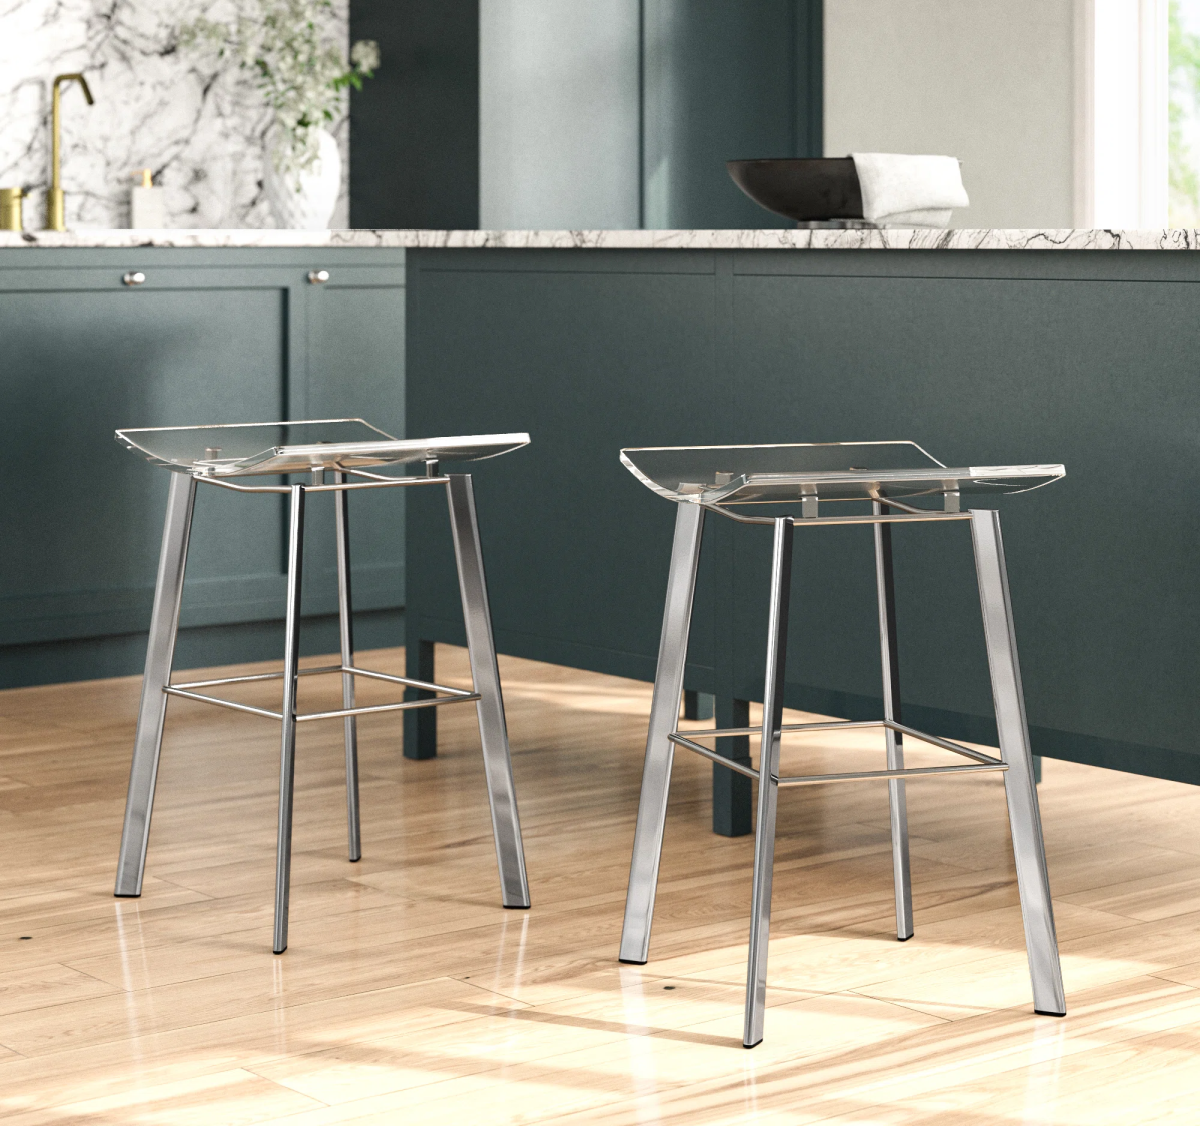 Modern counter stools from wayfair